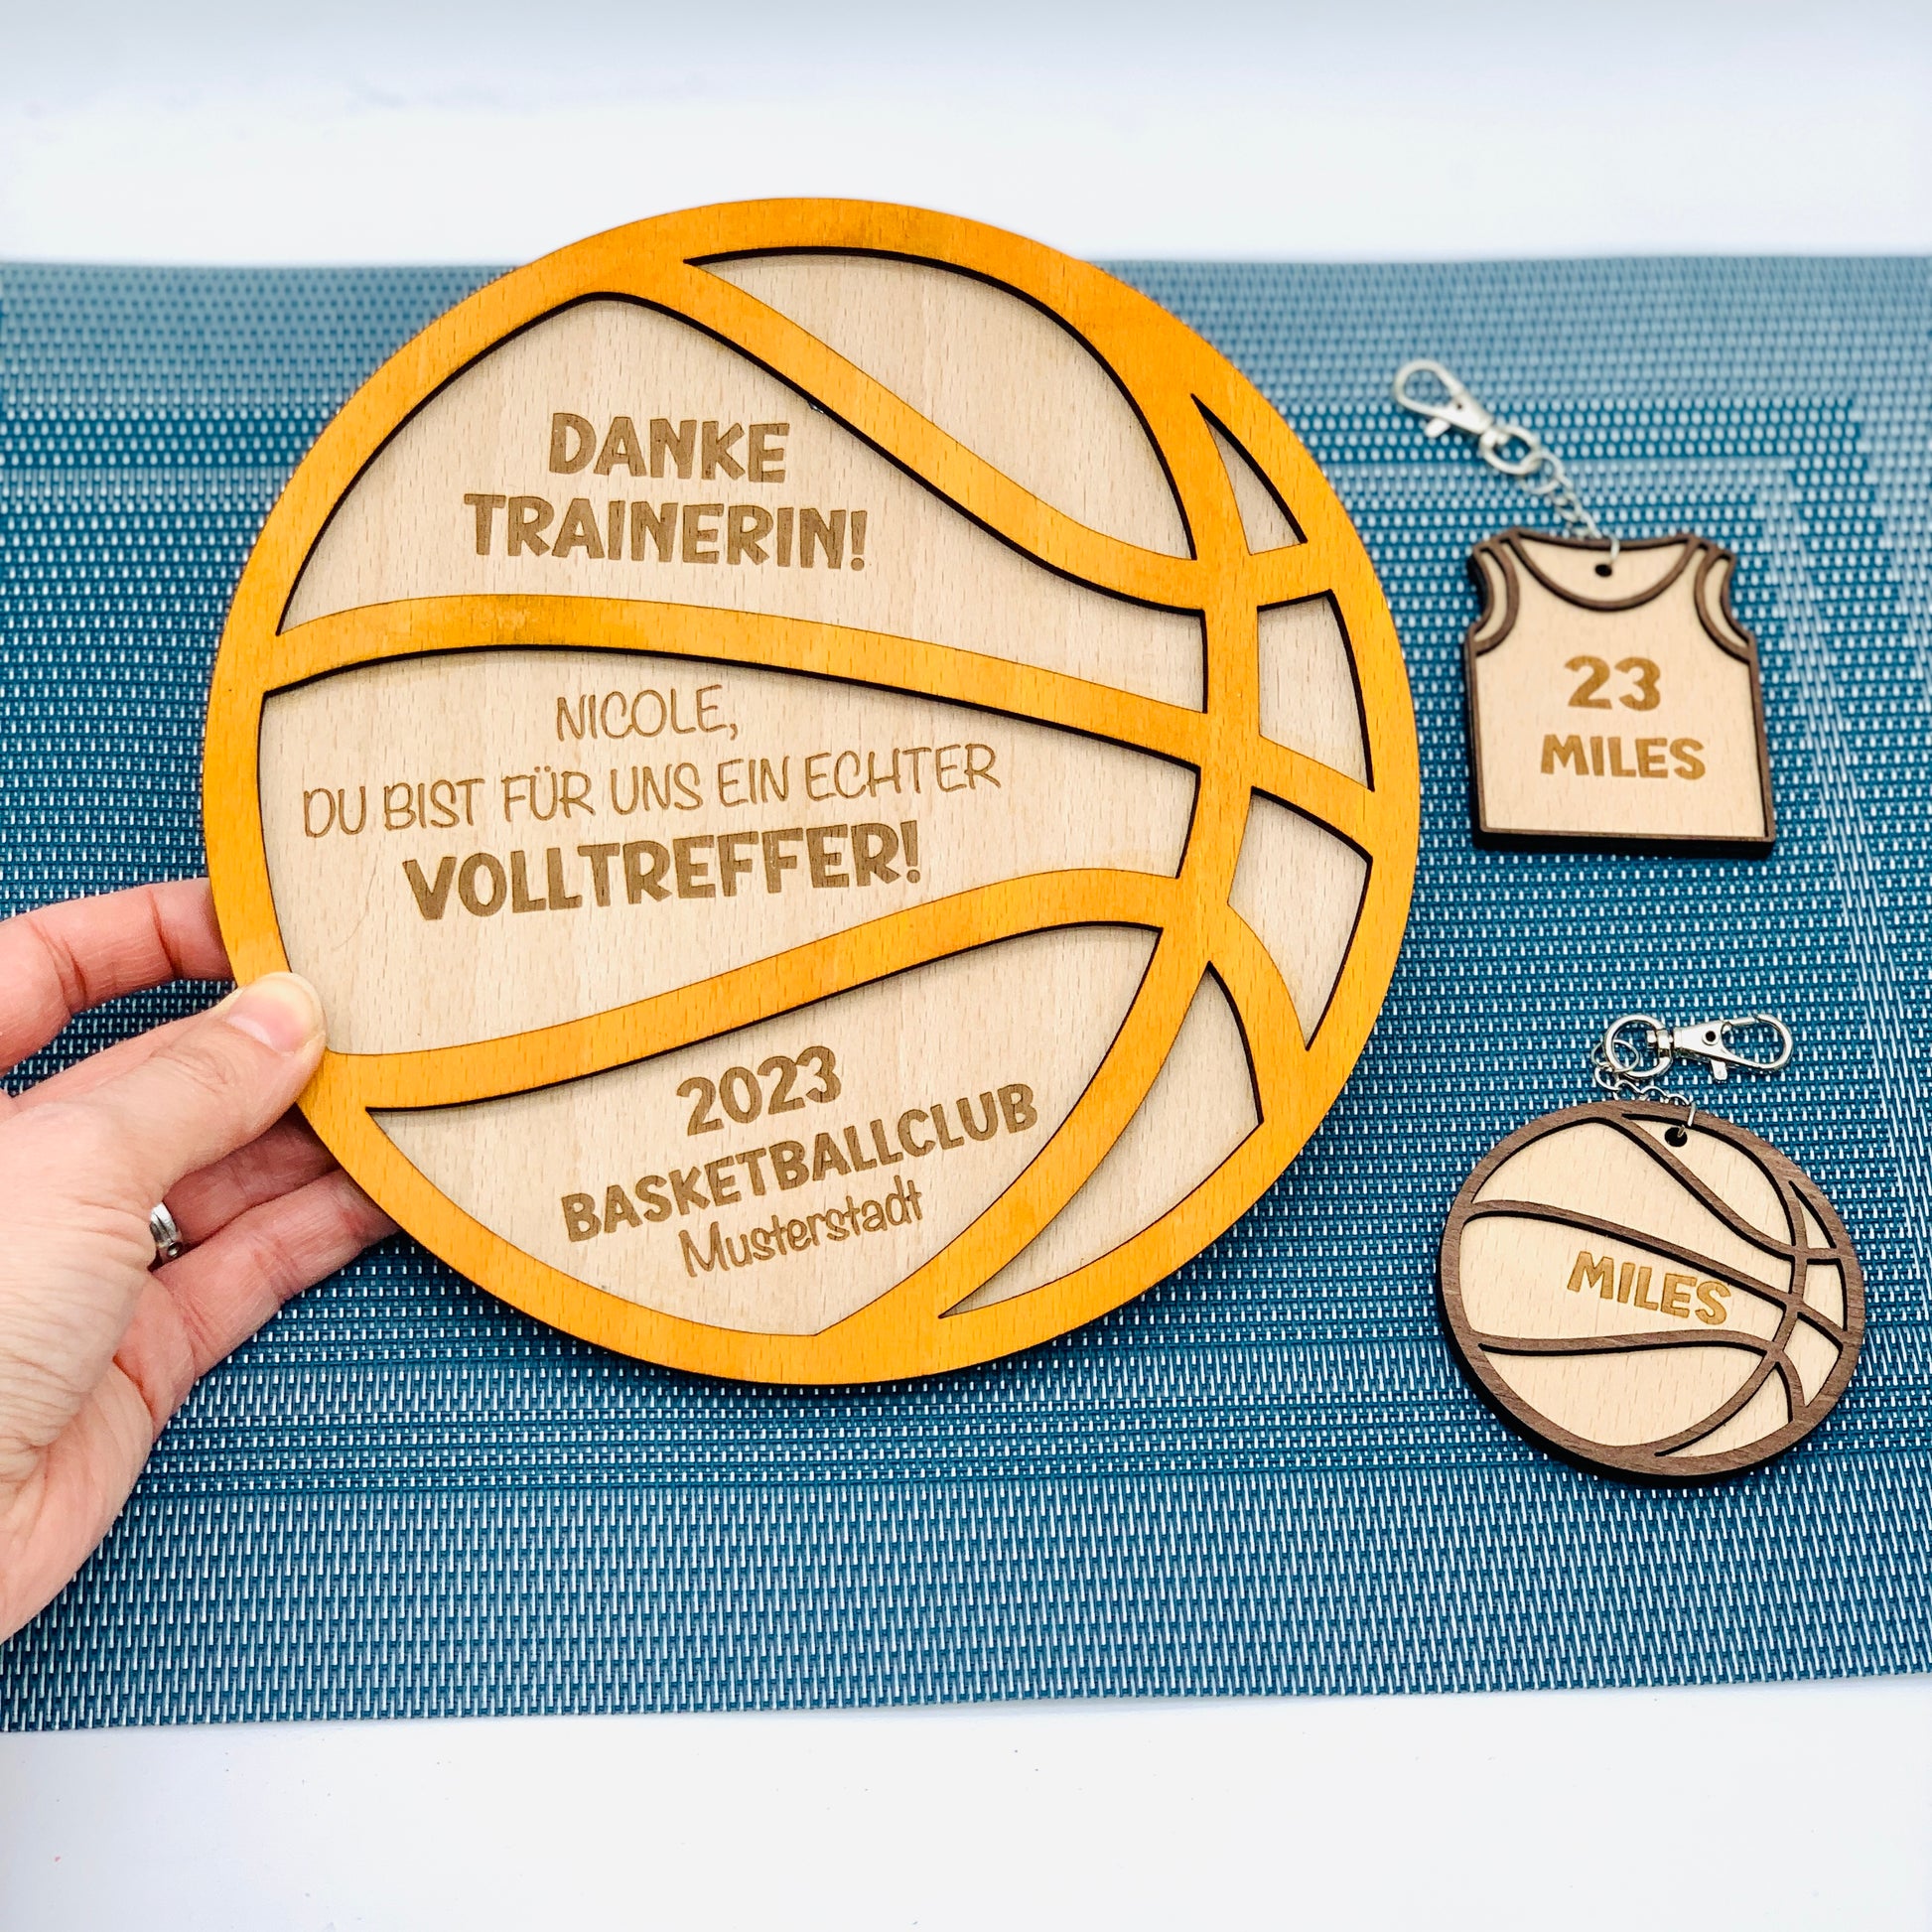 Holzschild Basketball - Trainer Geschenk Danke sagen - Basketball Verein Geschenk - Coach Abschied - Geschenk Aufstieg 